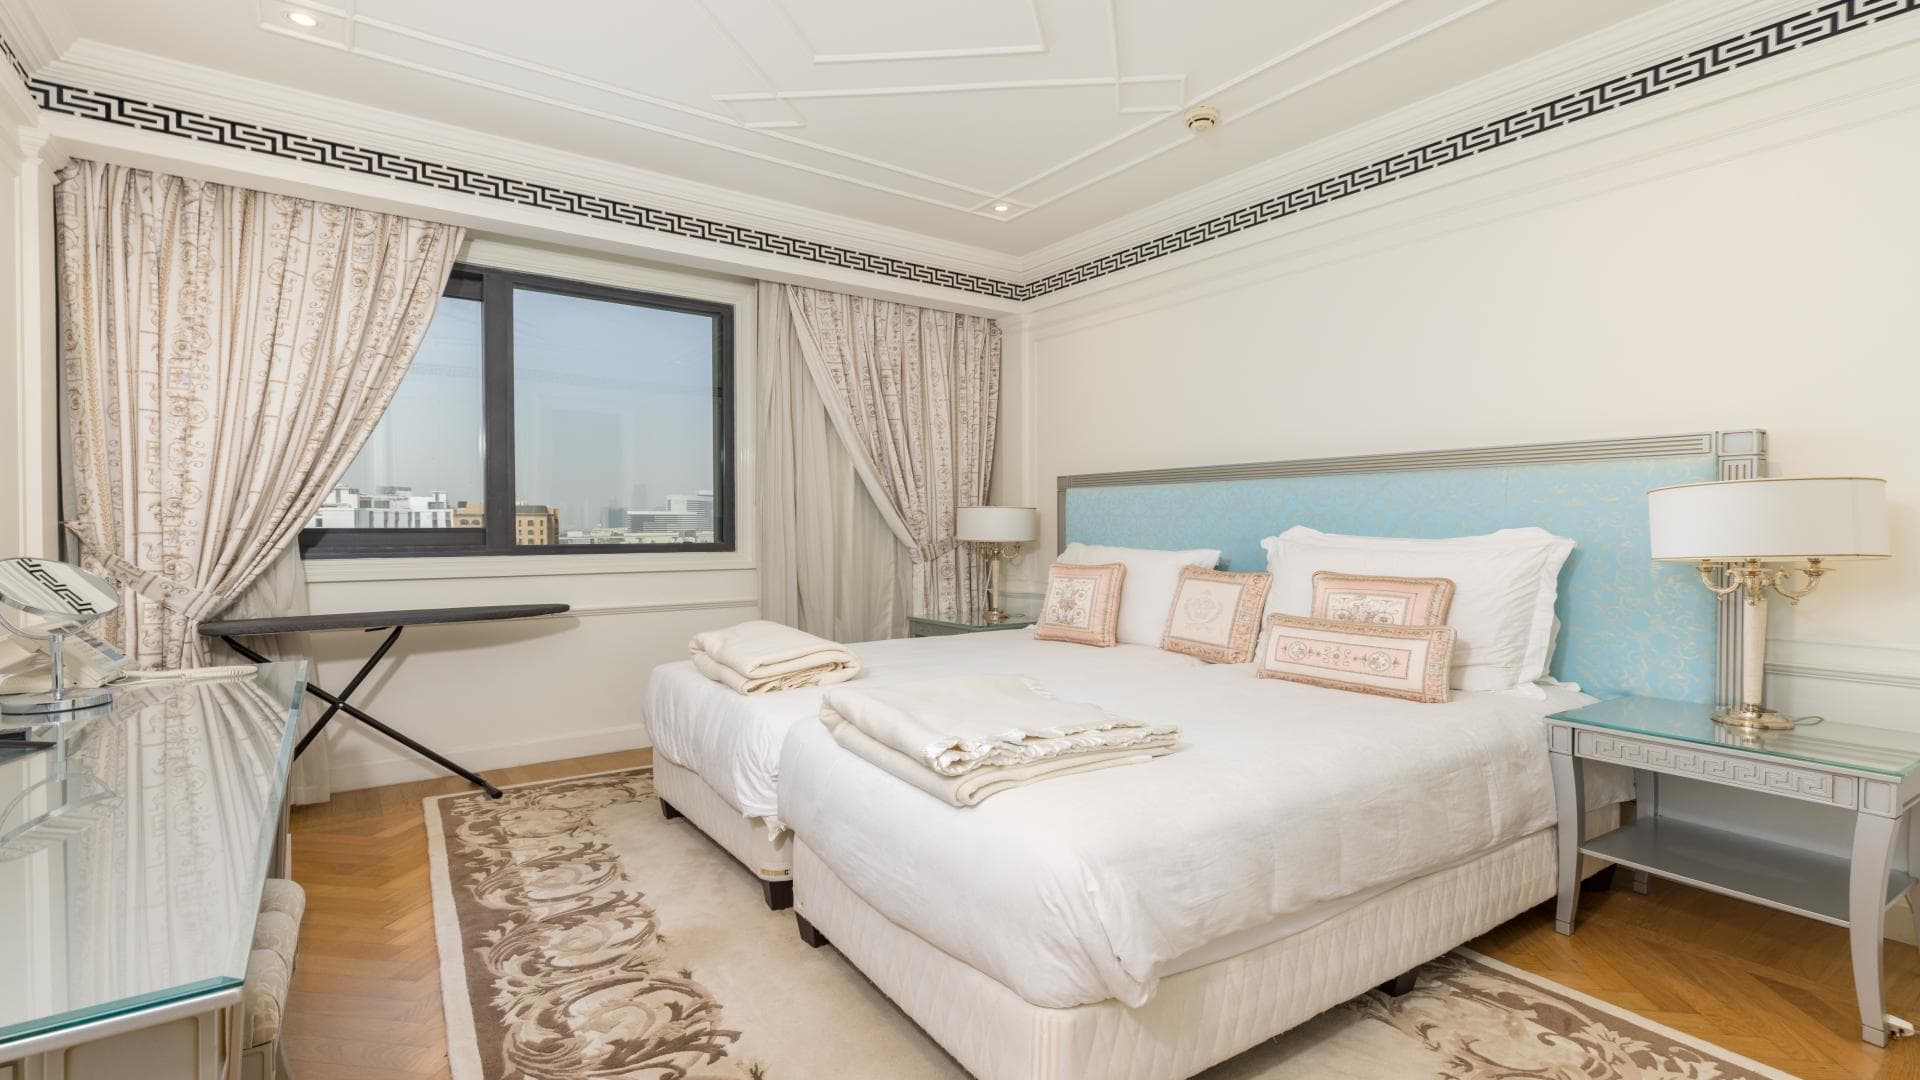 4 Bedroom Penthouse For Rent Palazzo Versace Lp14406 1ceea3f9de3b6d00.jpg